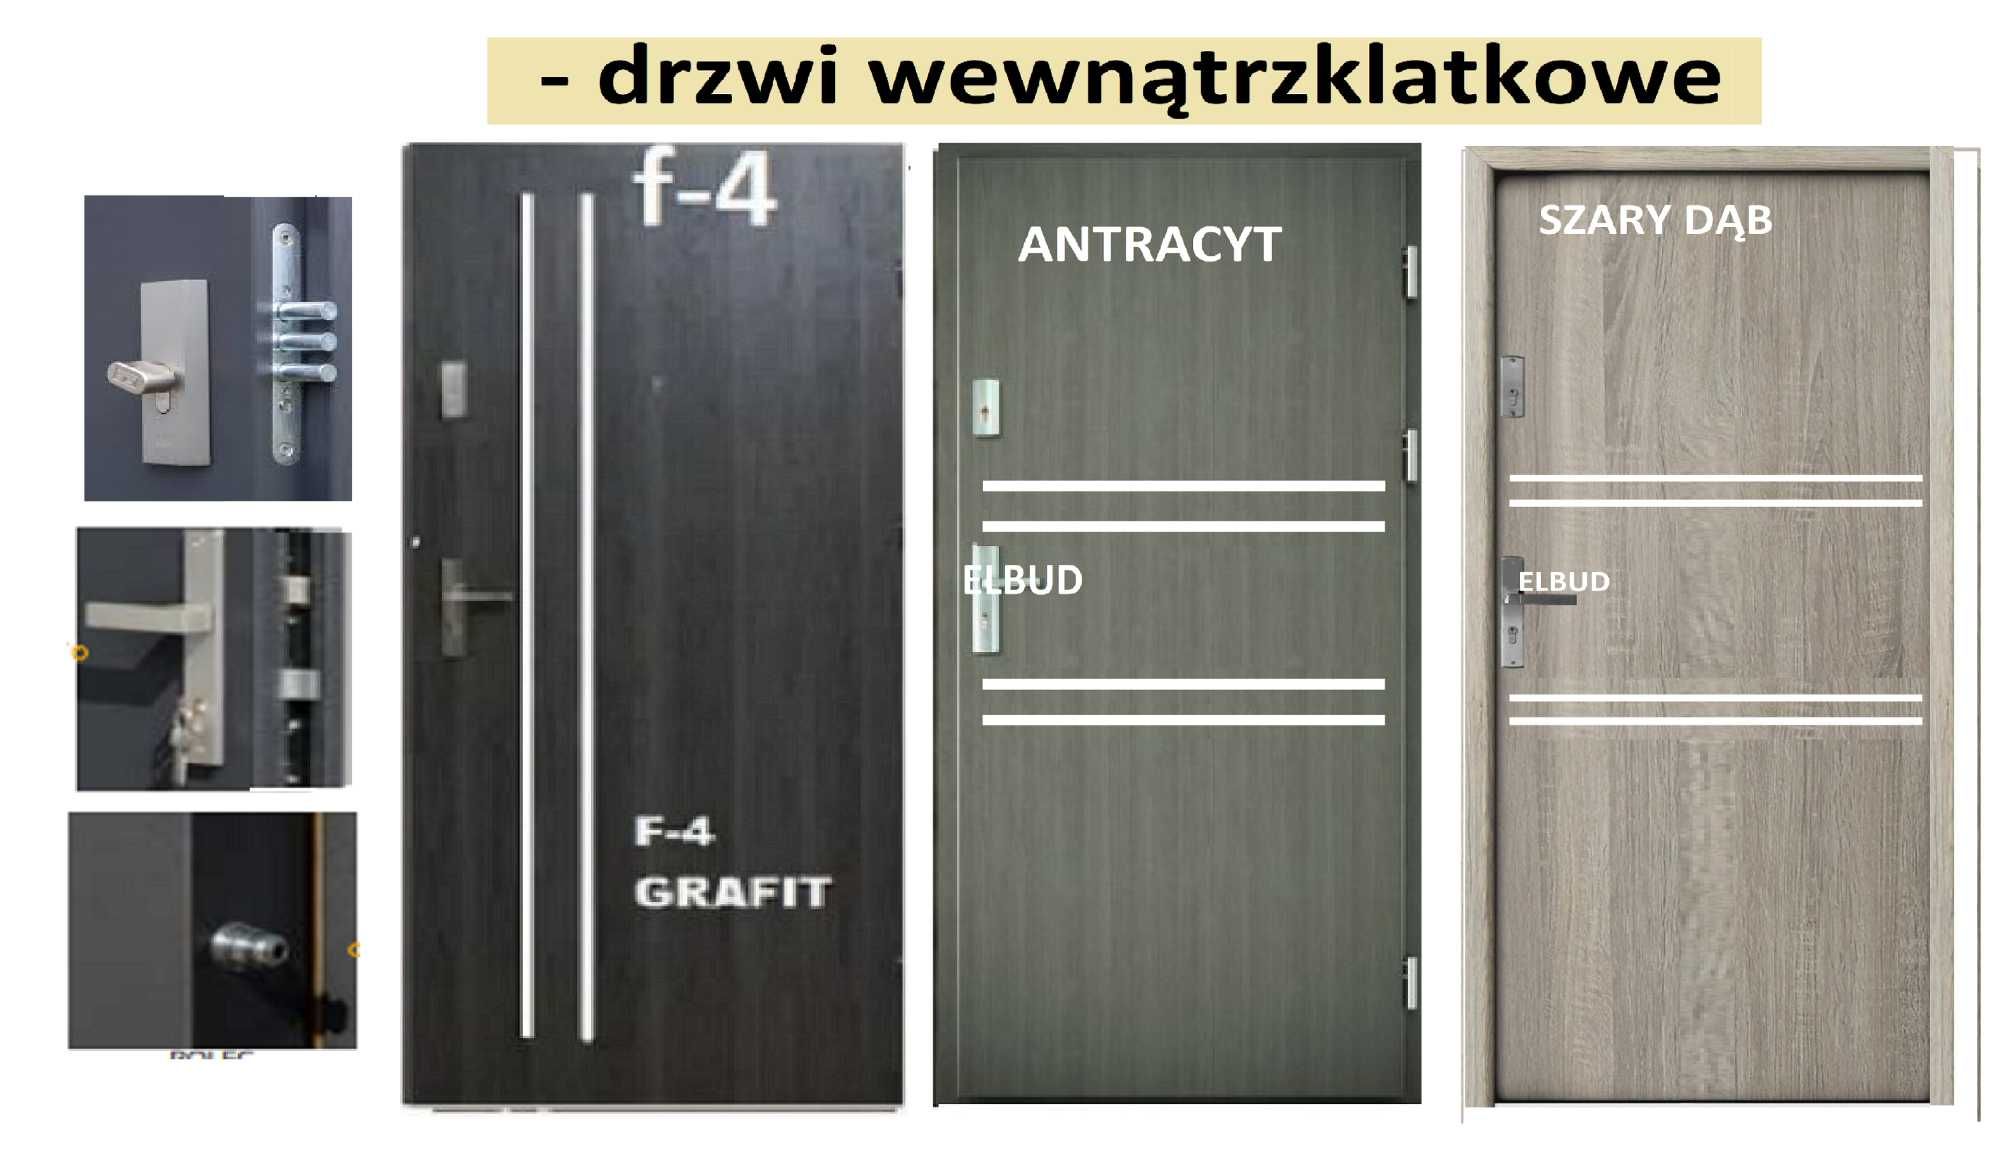 Drzwi z MONTAŻEM-wejściowe do mieszkania-zewnętrzne-WEWNĄTRZKLATKOWE